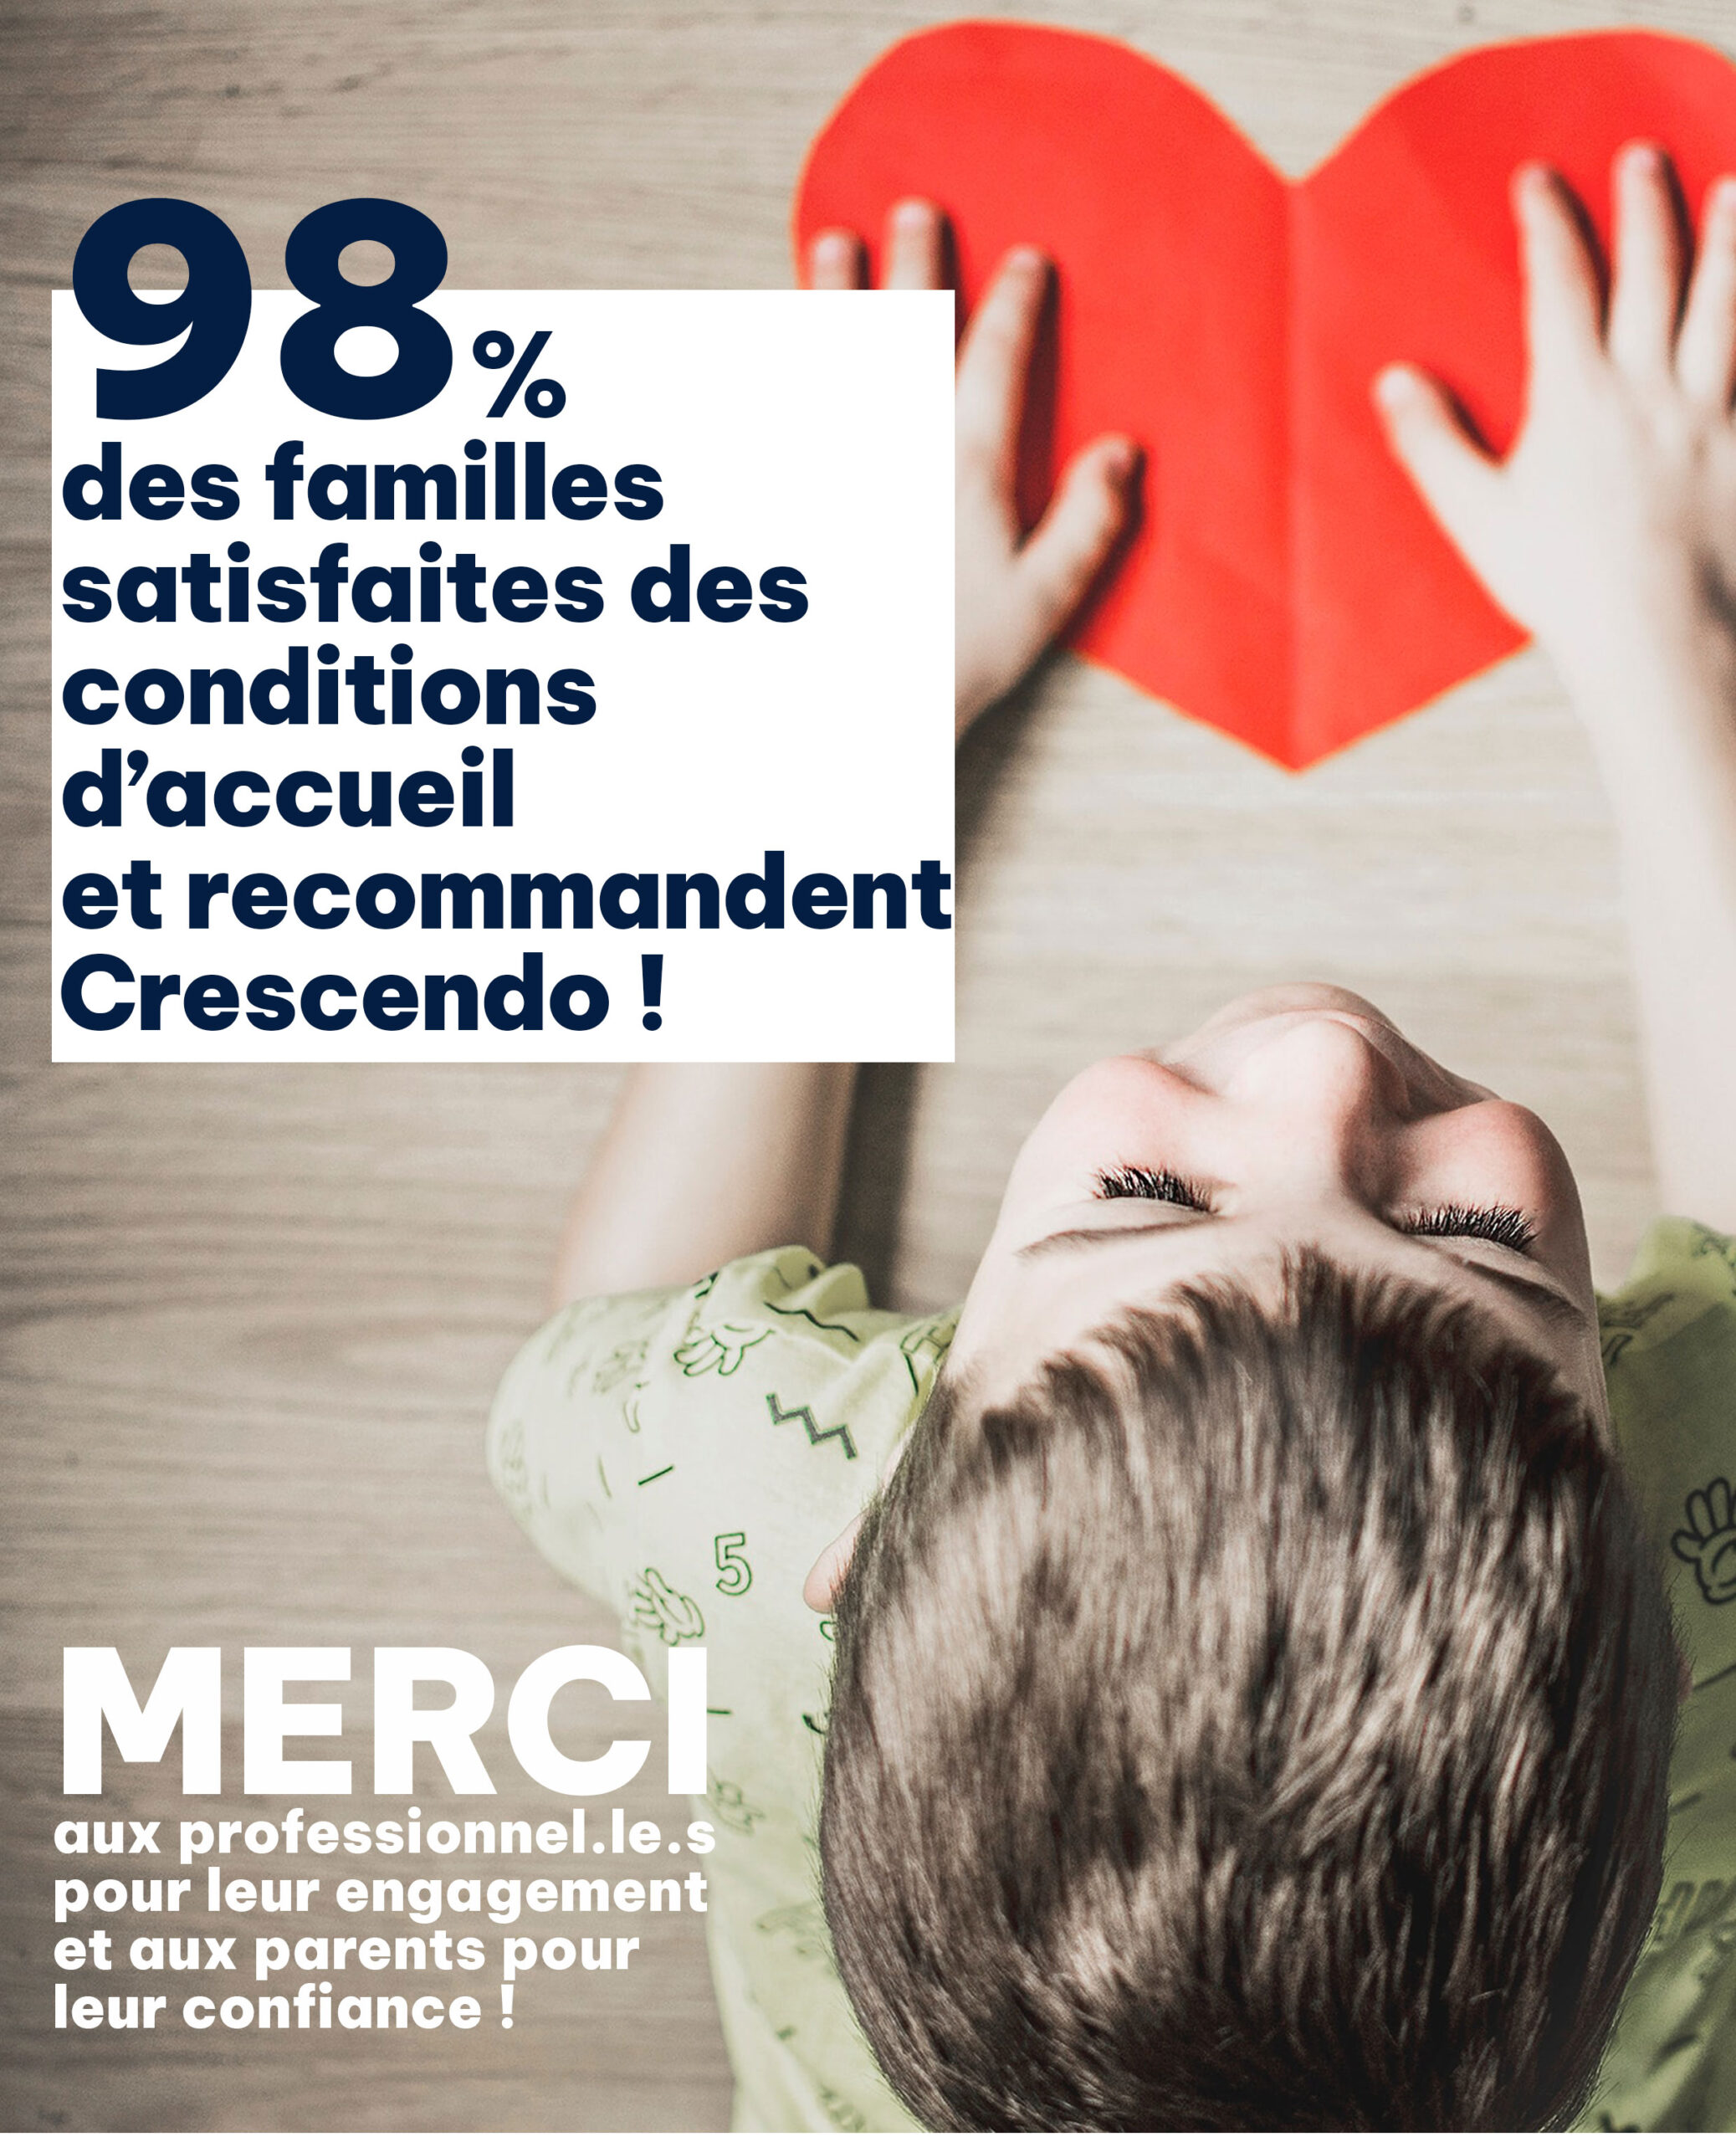 98% des familles satisfaites des conditions d’accueil et recommandent Crescendo !